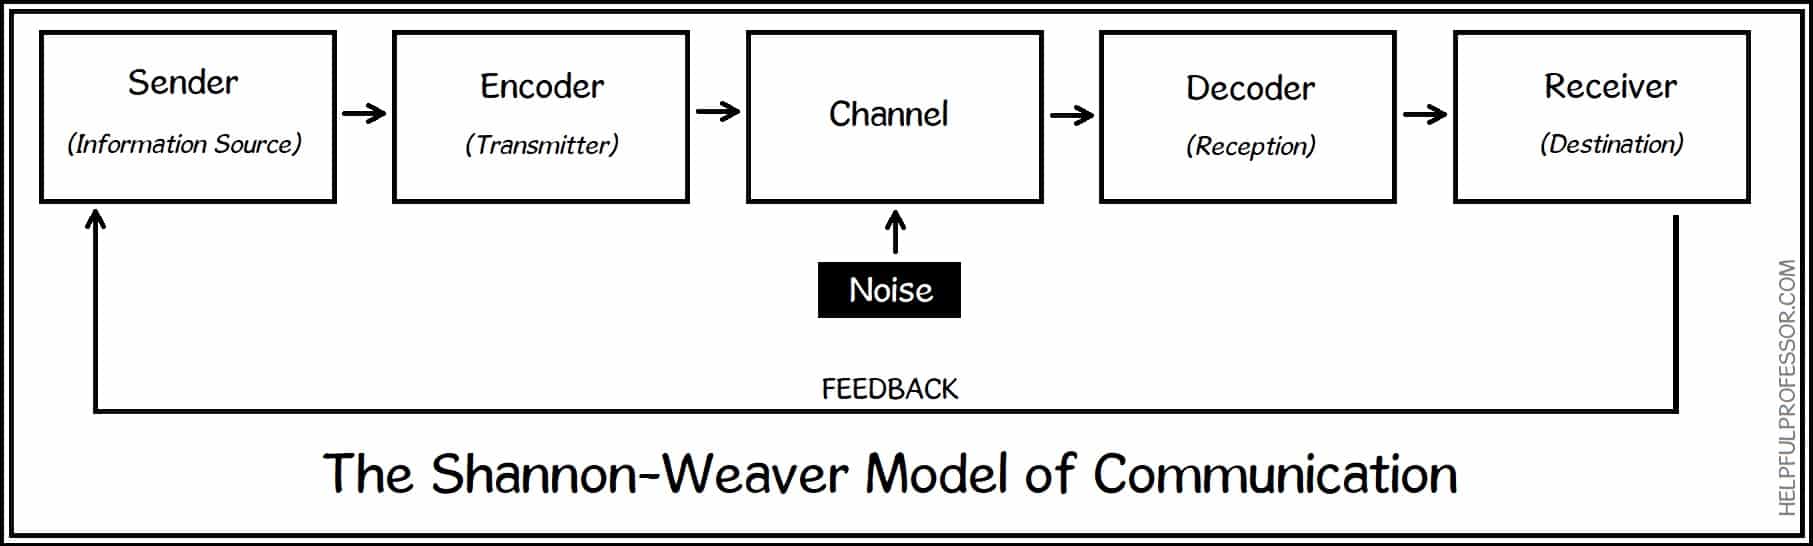 Shannon-weaver-model-of-communication.jpg